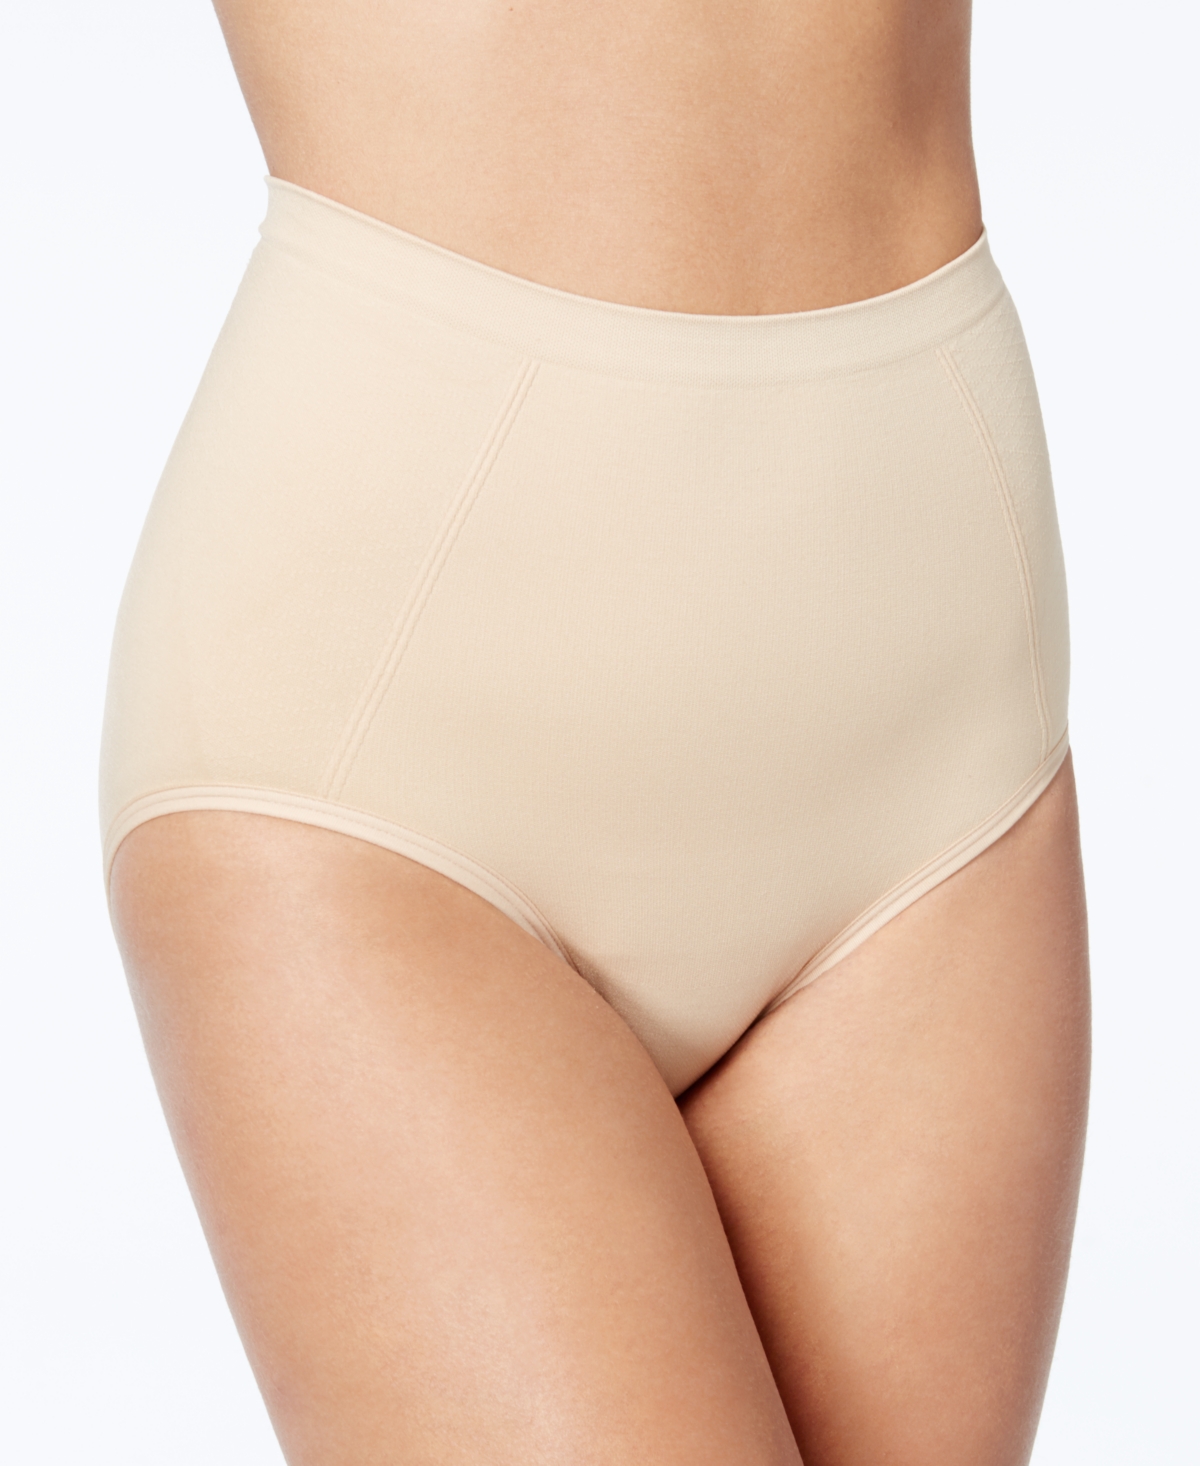 Women's Extra Firm Tummy-Control Seamless Brief Underwear 2 Pack X245 - White/White